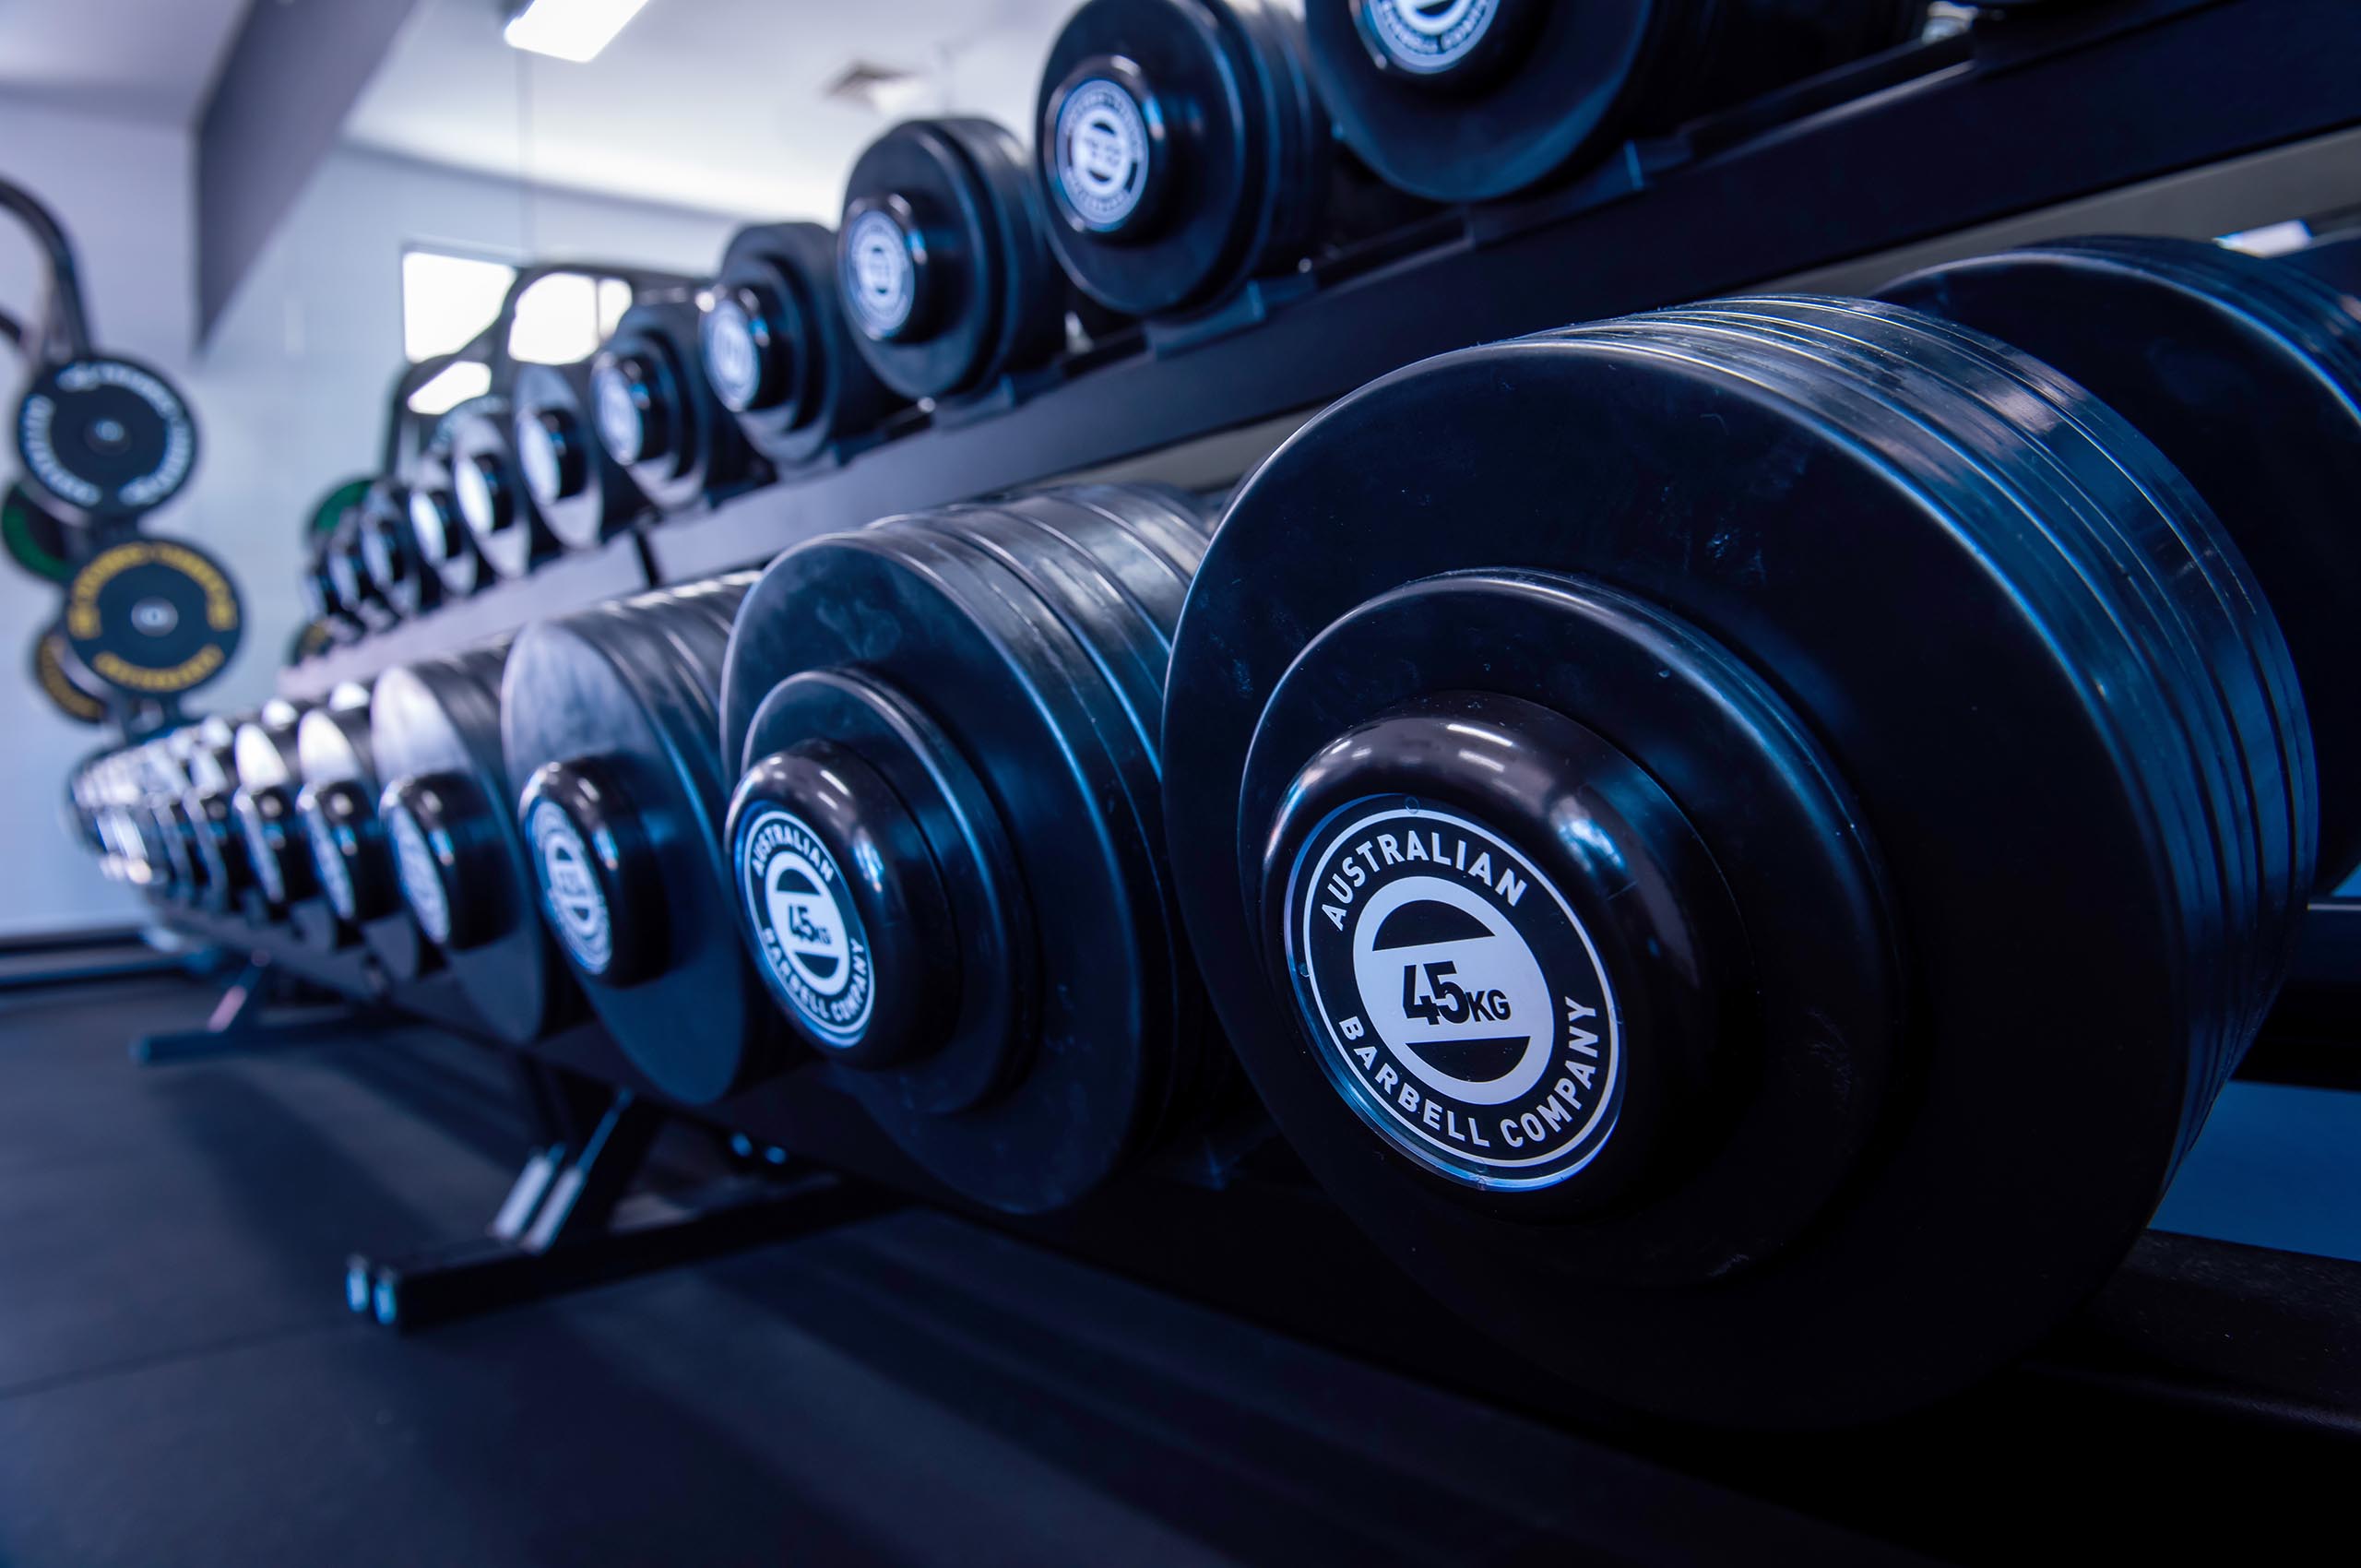 Bendigo Sports Centre - Variety of Gym Weights